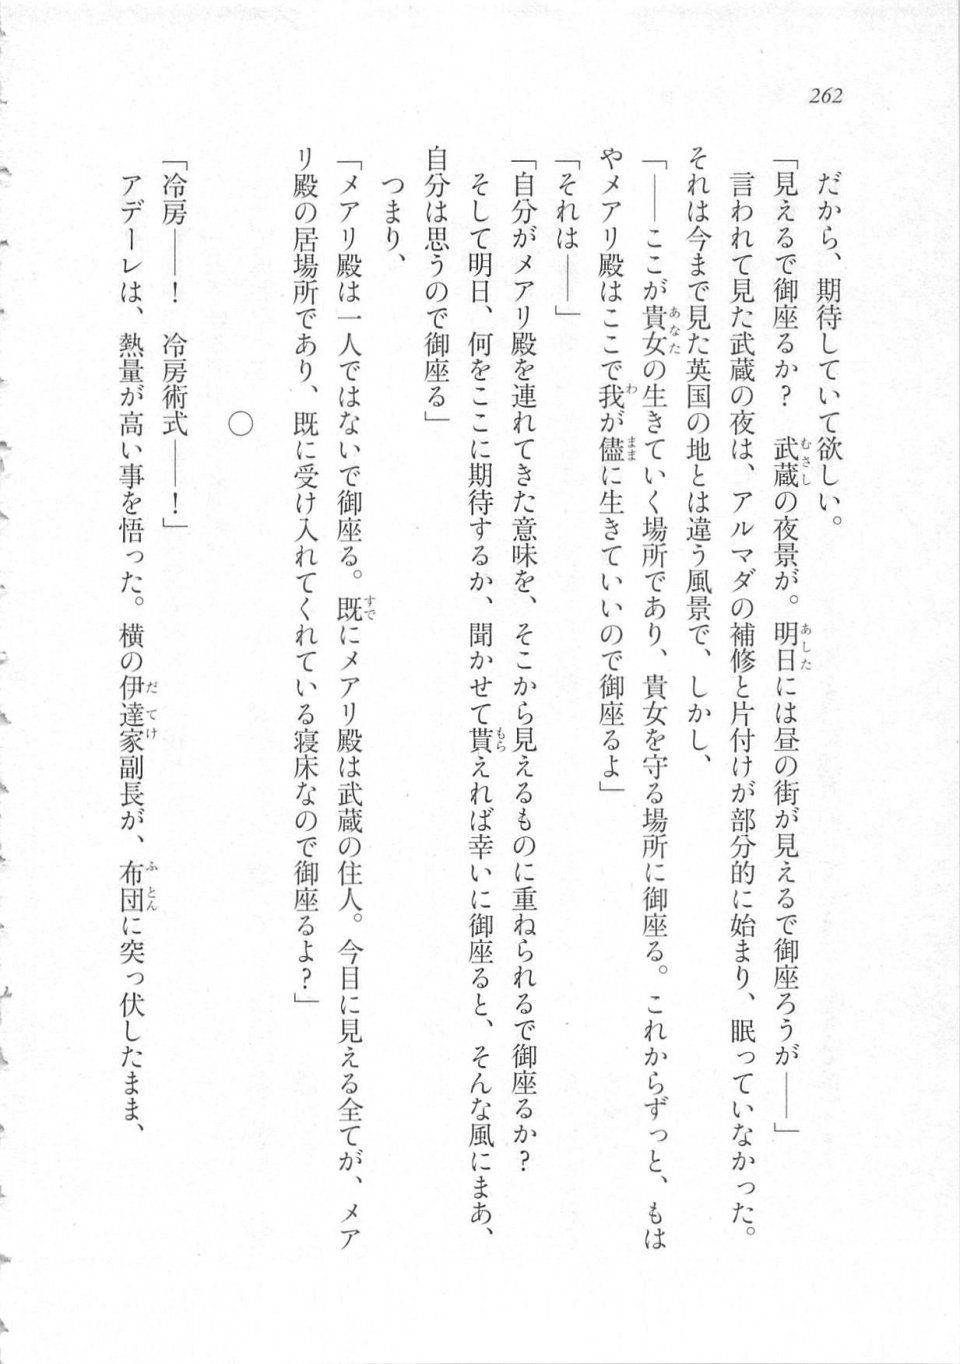 Kyoukai Senjou no Horizon LN Sidestory Vol 3 - Photo #266